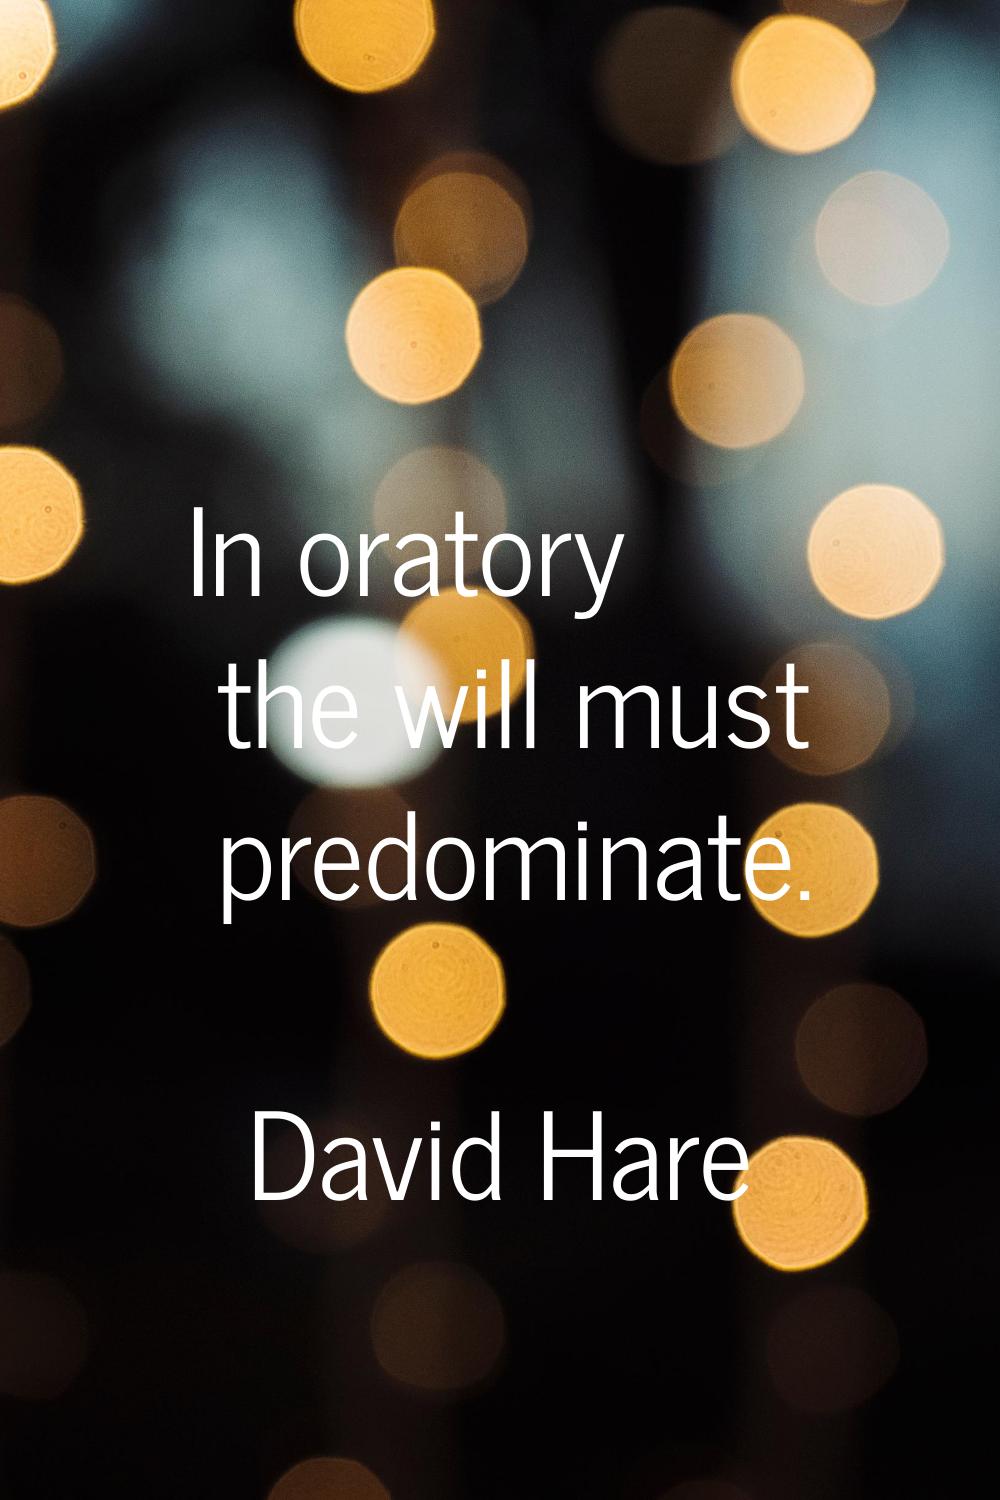 In oratory the will must predominate.